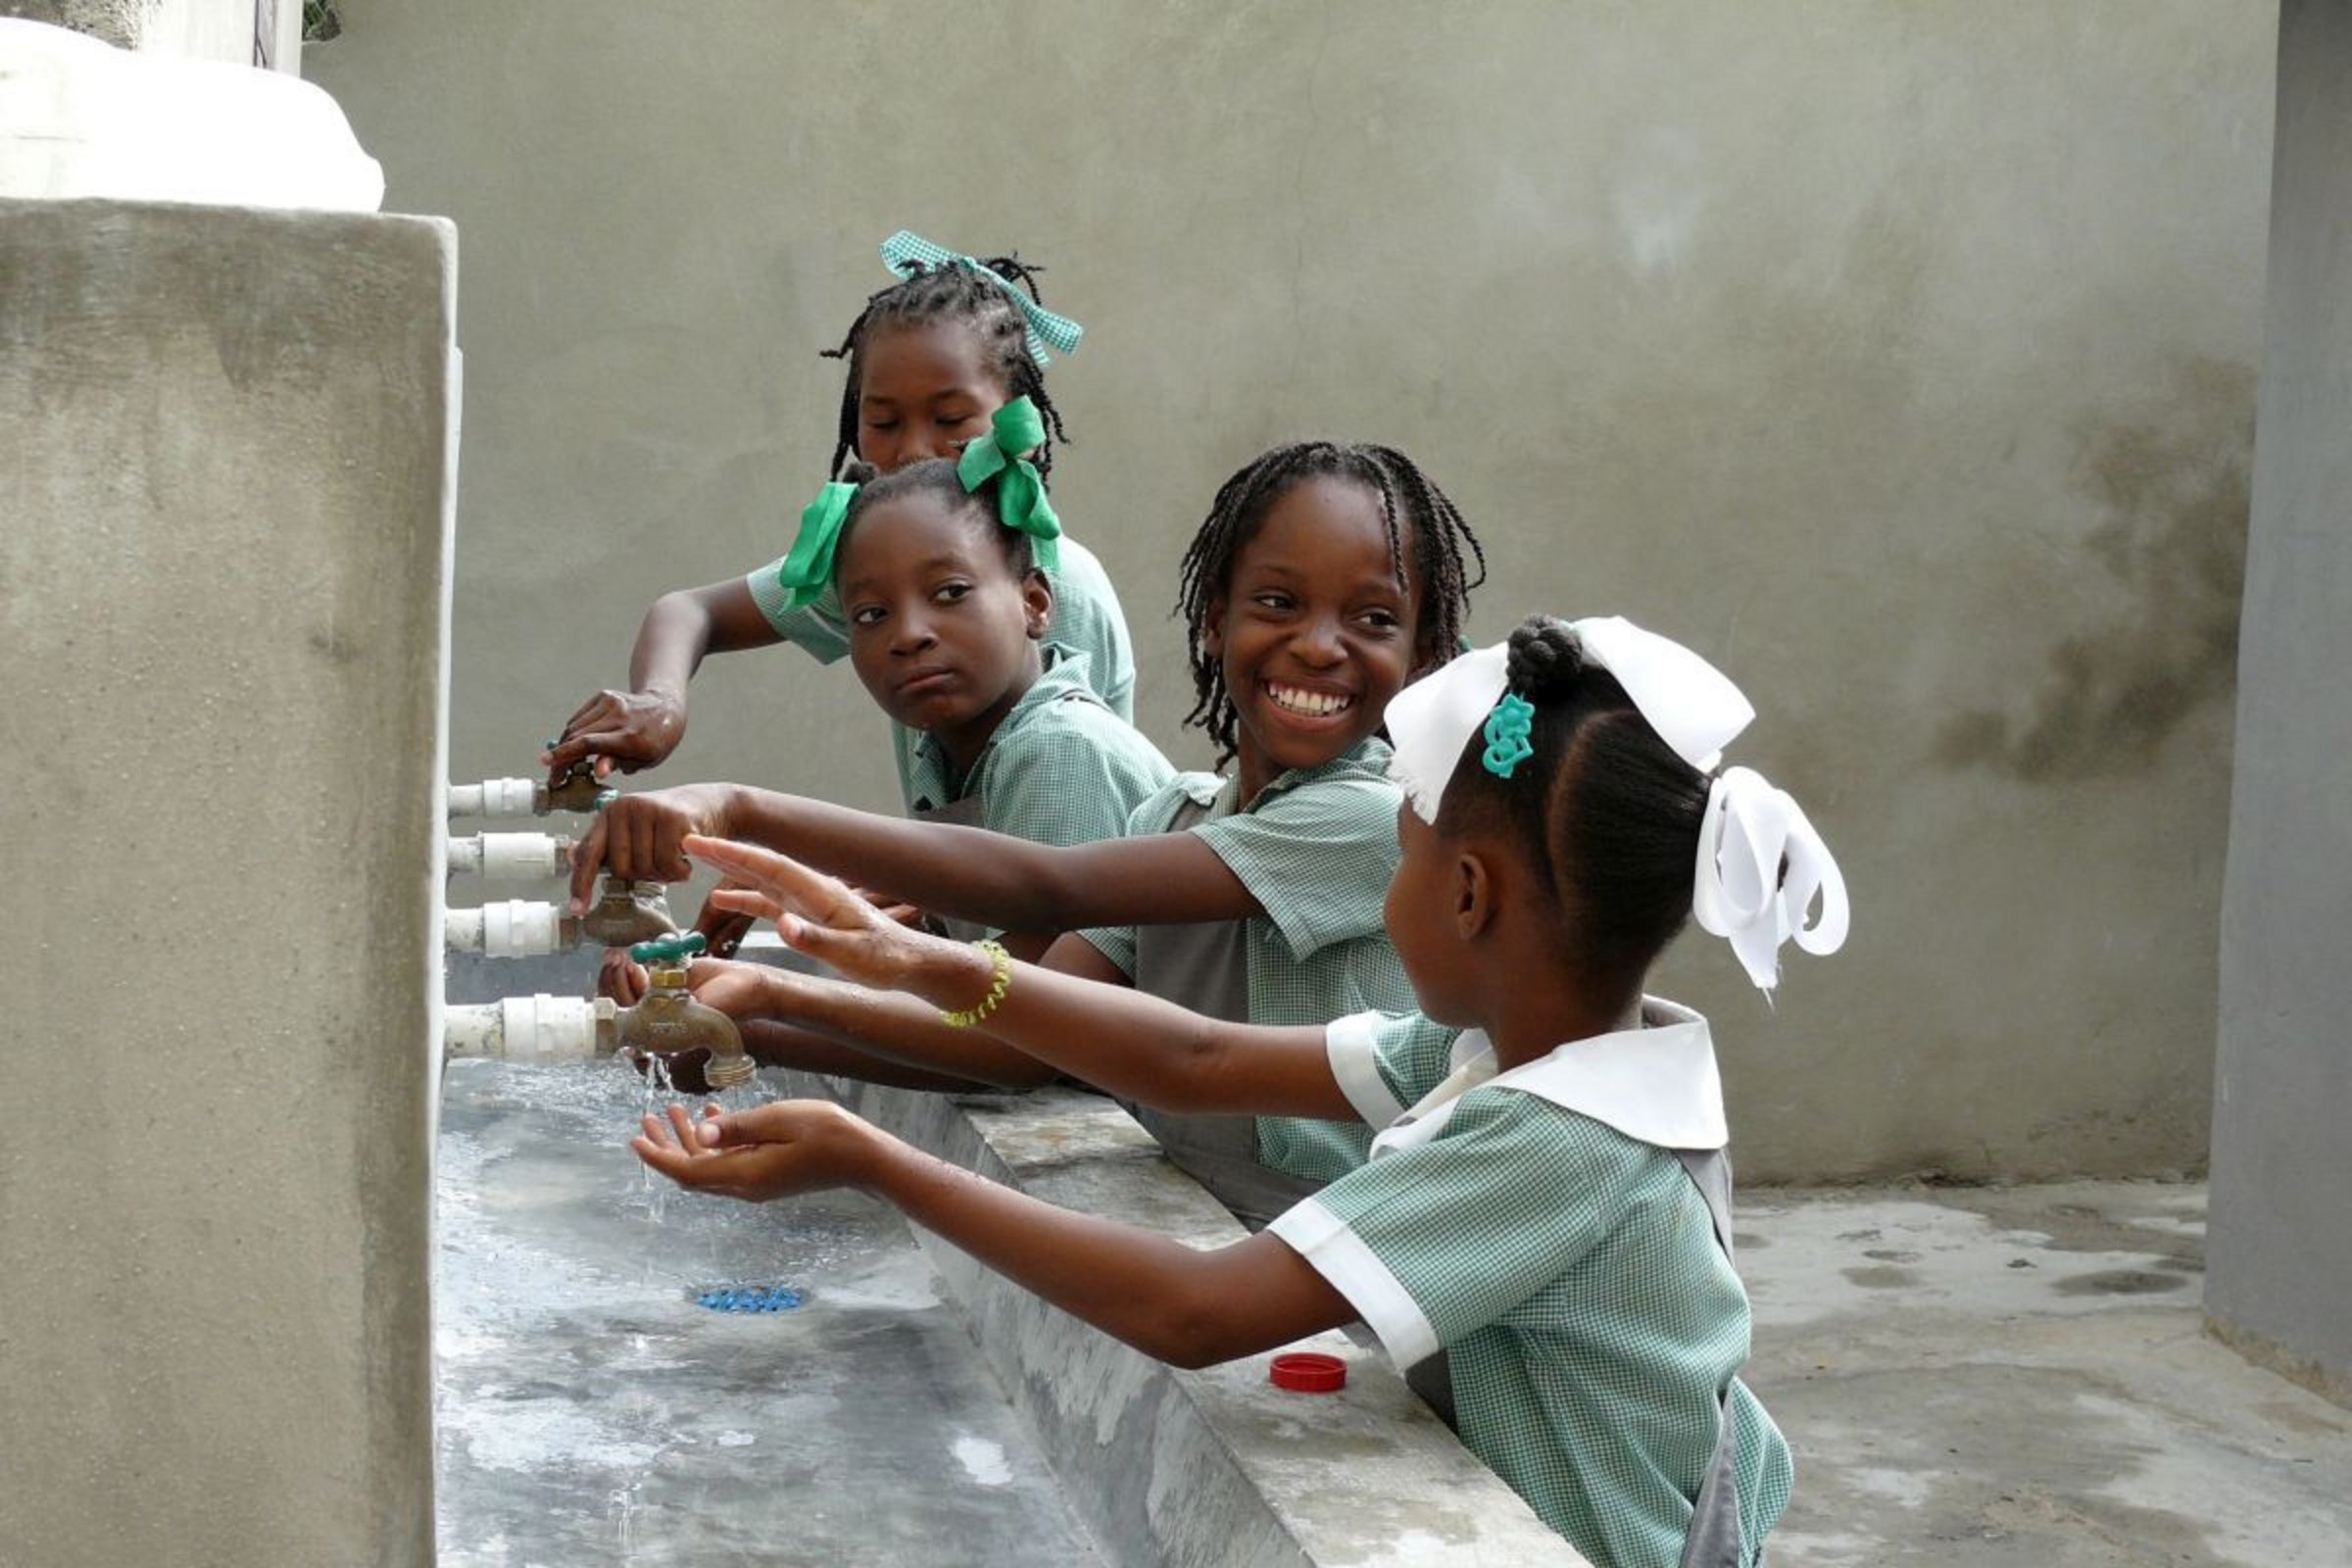 Gesundheit an Schulen in Haiti durch Hygienemaßnahmen staerken